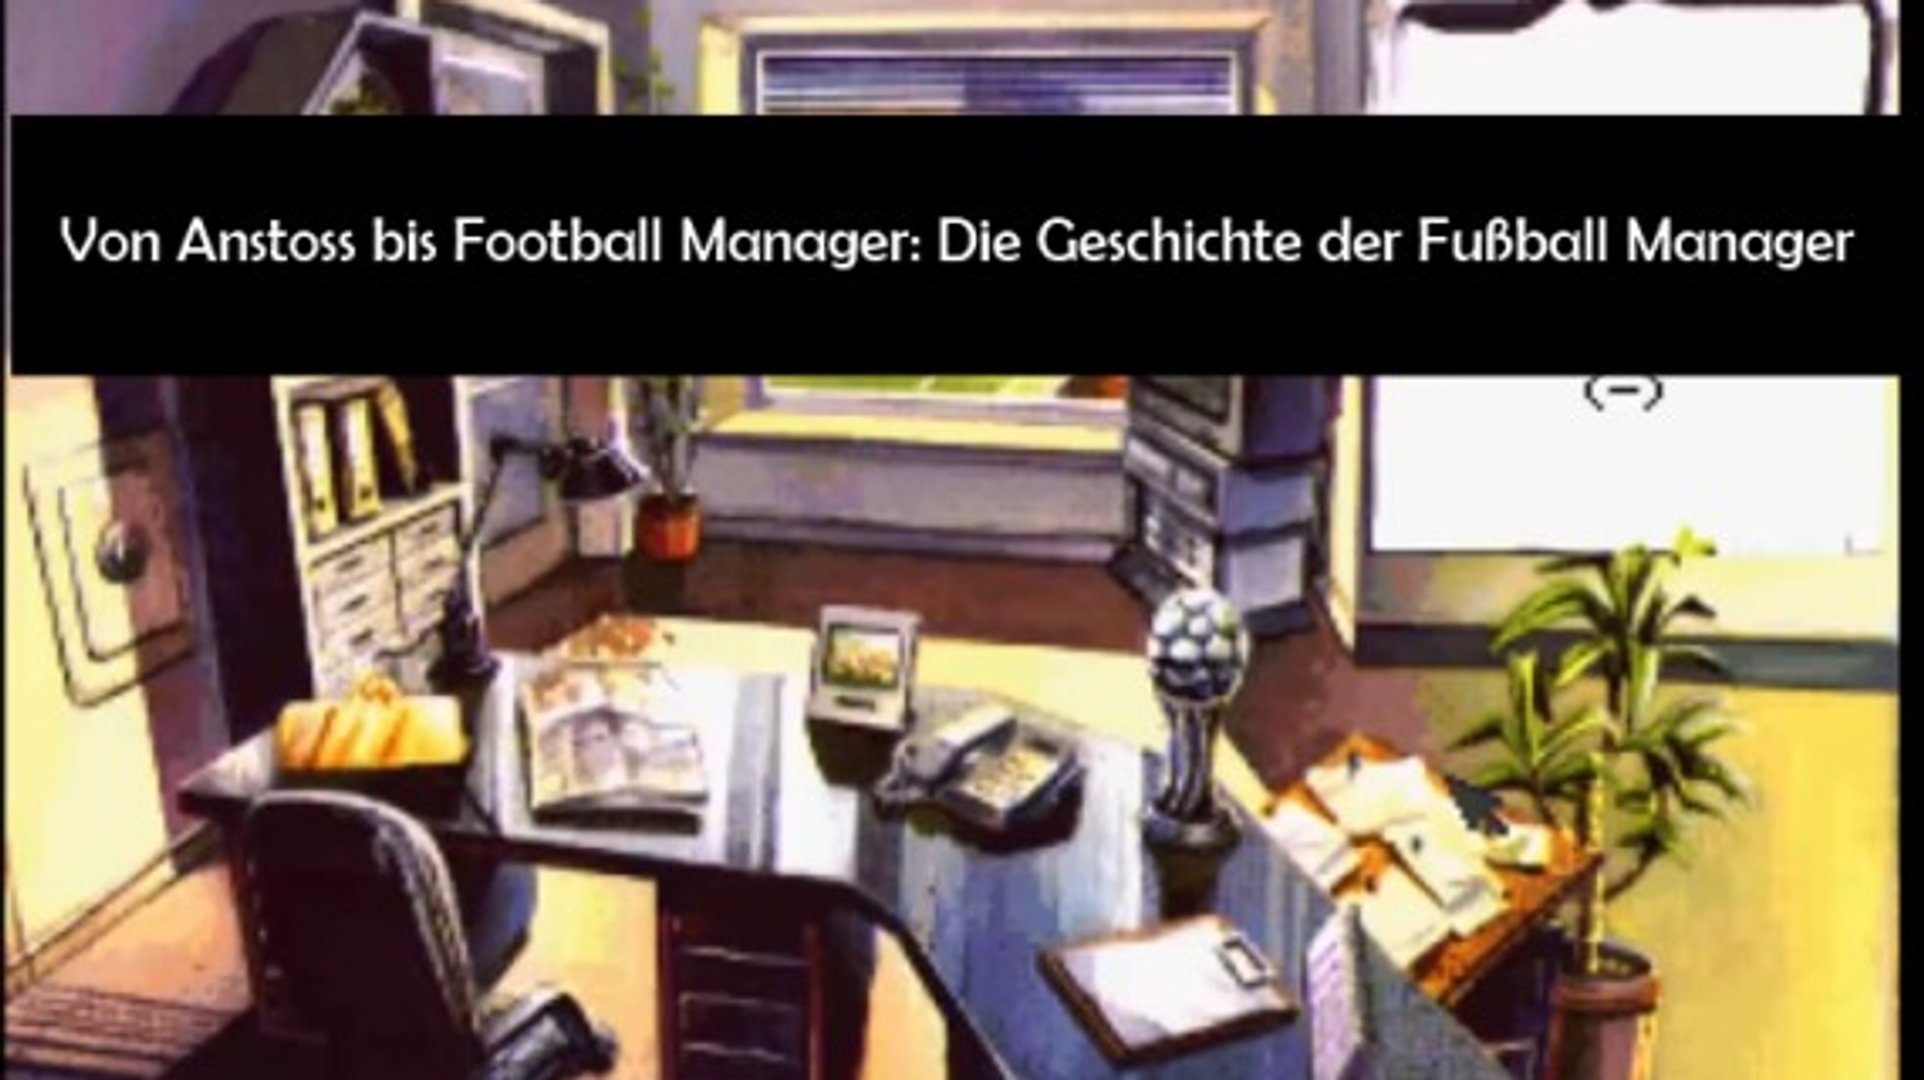 Von Bundesliga Manager über Anstoss zum Football Manager